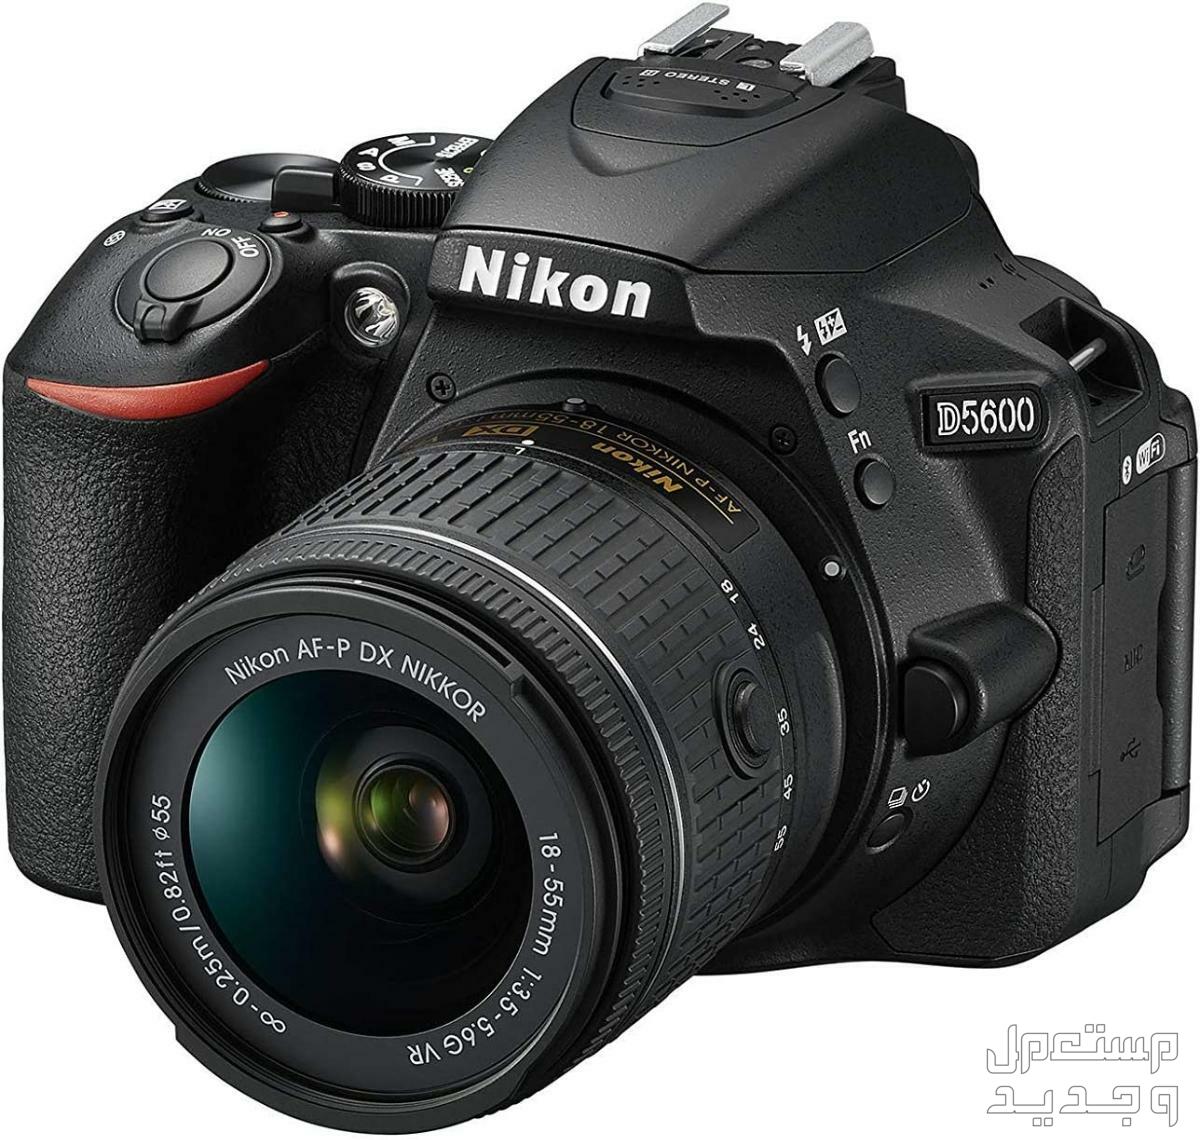 10 كاميرات تصوير ماركات عالمية بأسعار رخيصة في فلسطين كاميرا Nikon D5600